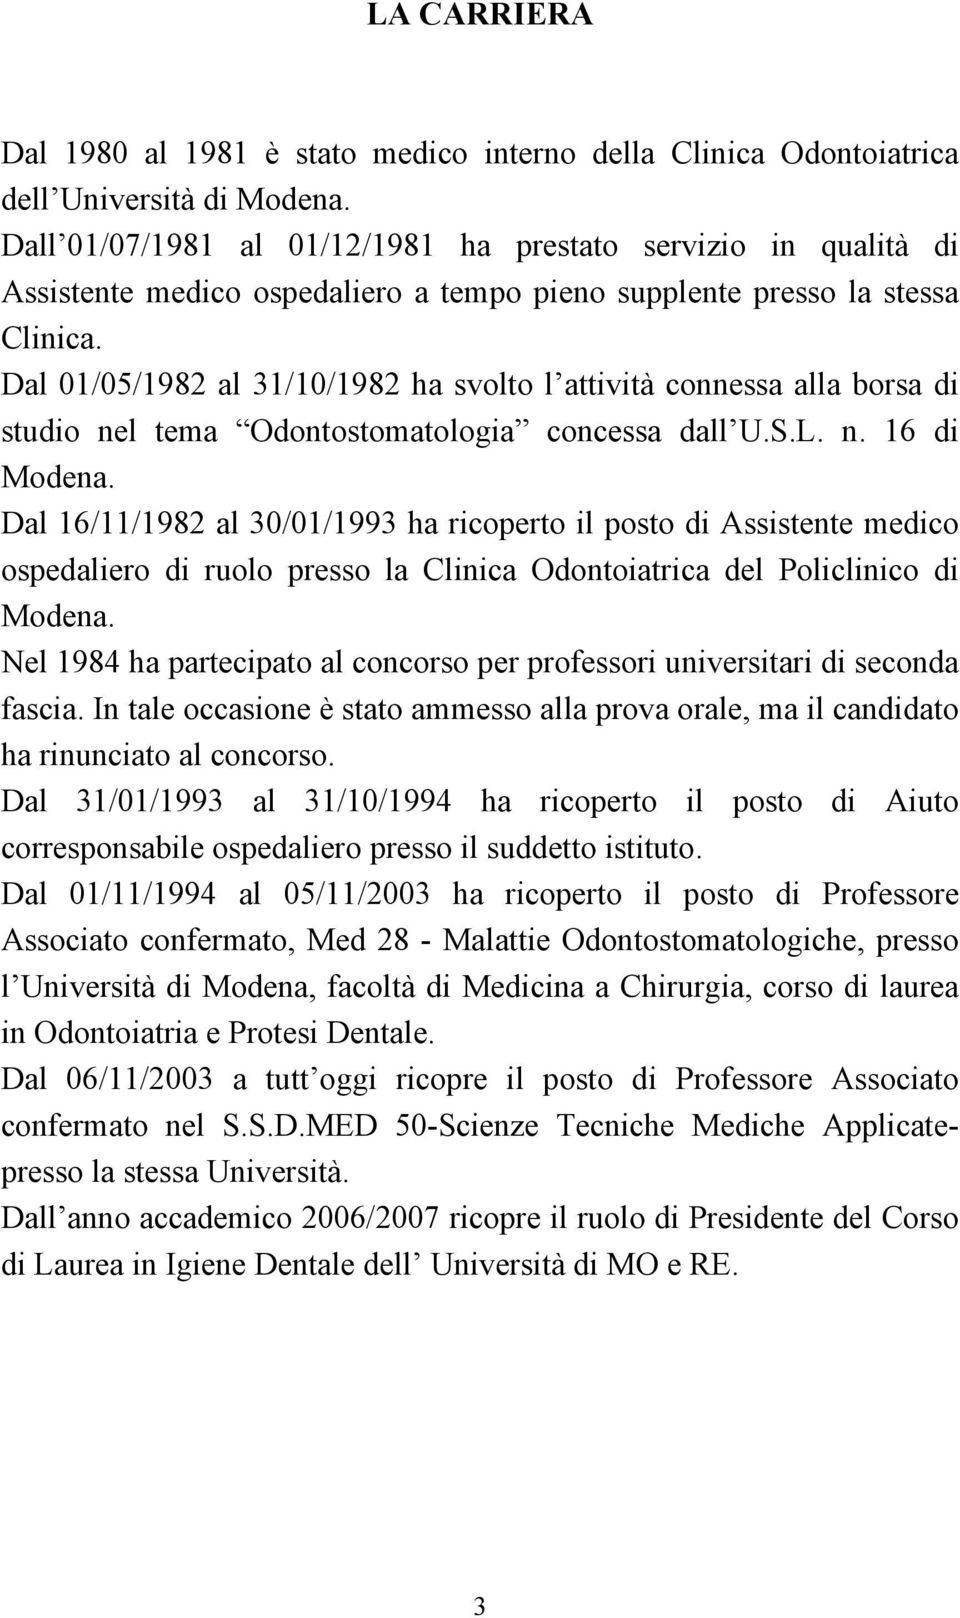 Dal 01/05/1982 al 31/10/1982 ha svolto l attività connessa alla borsa di studio nel tema Odontostomatologia concessa dall U.S.L. n. 16 di Modena.